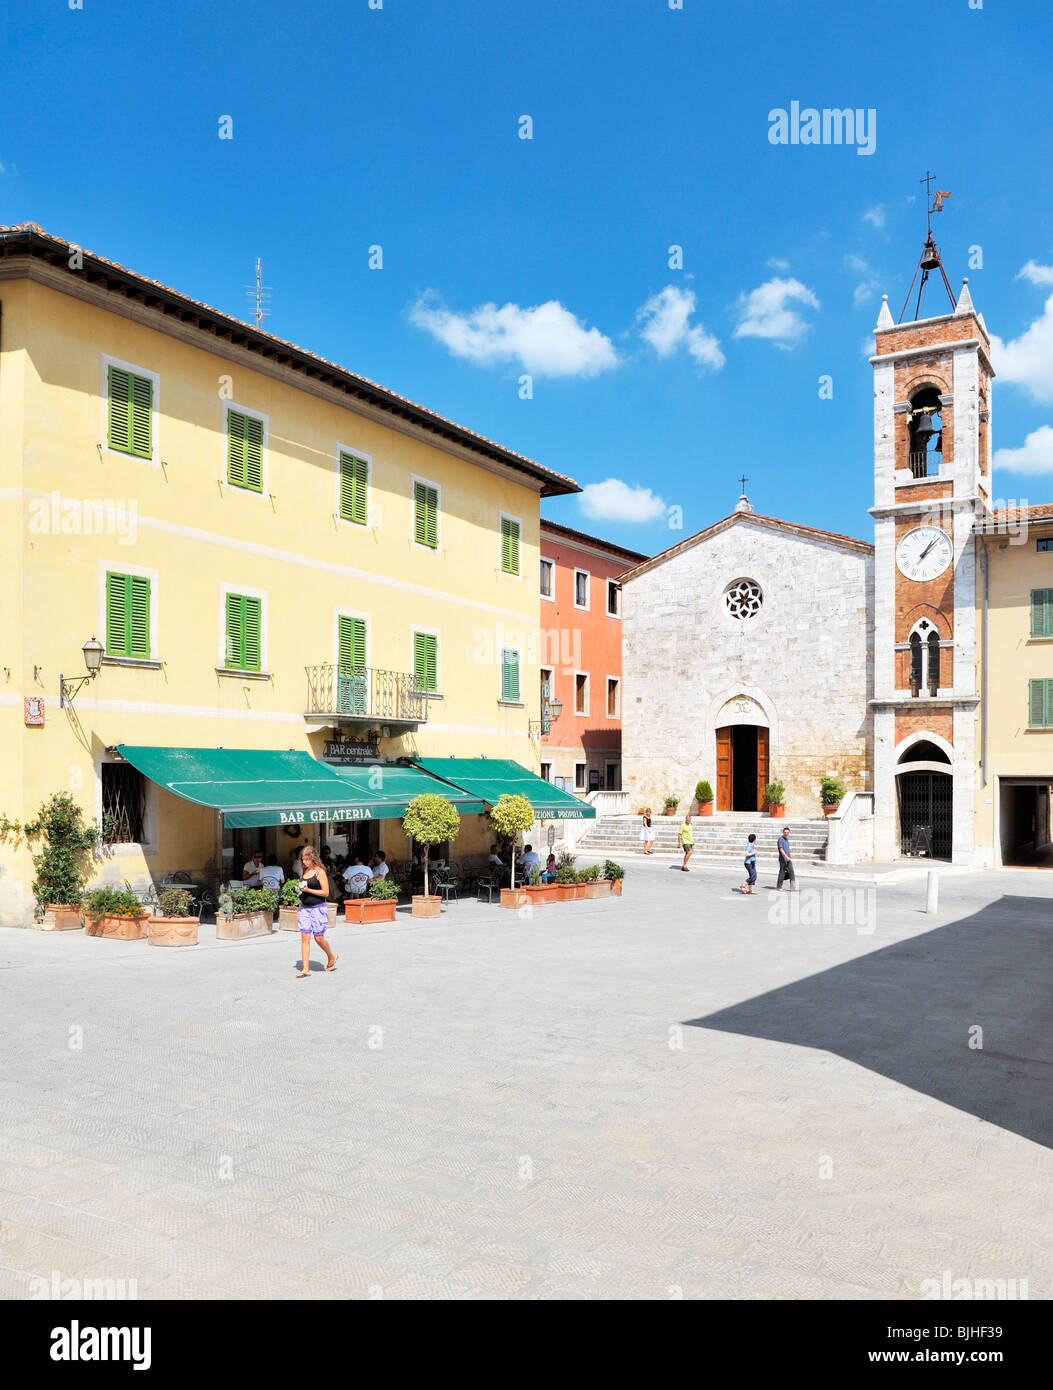 Die Piazza della Liberta inmitten der Hügel Dorf von San Quirico d ' Orcia, Toskana, Italien Stockfoto